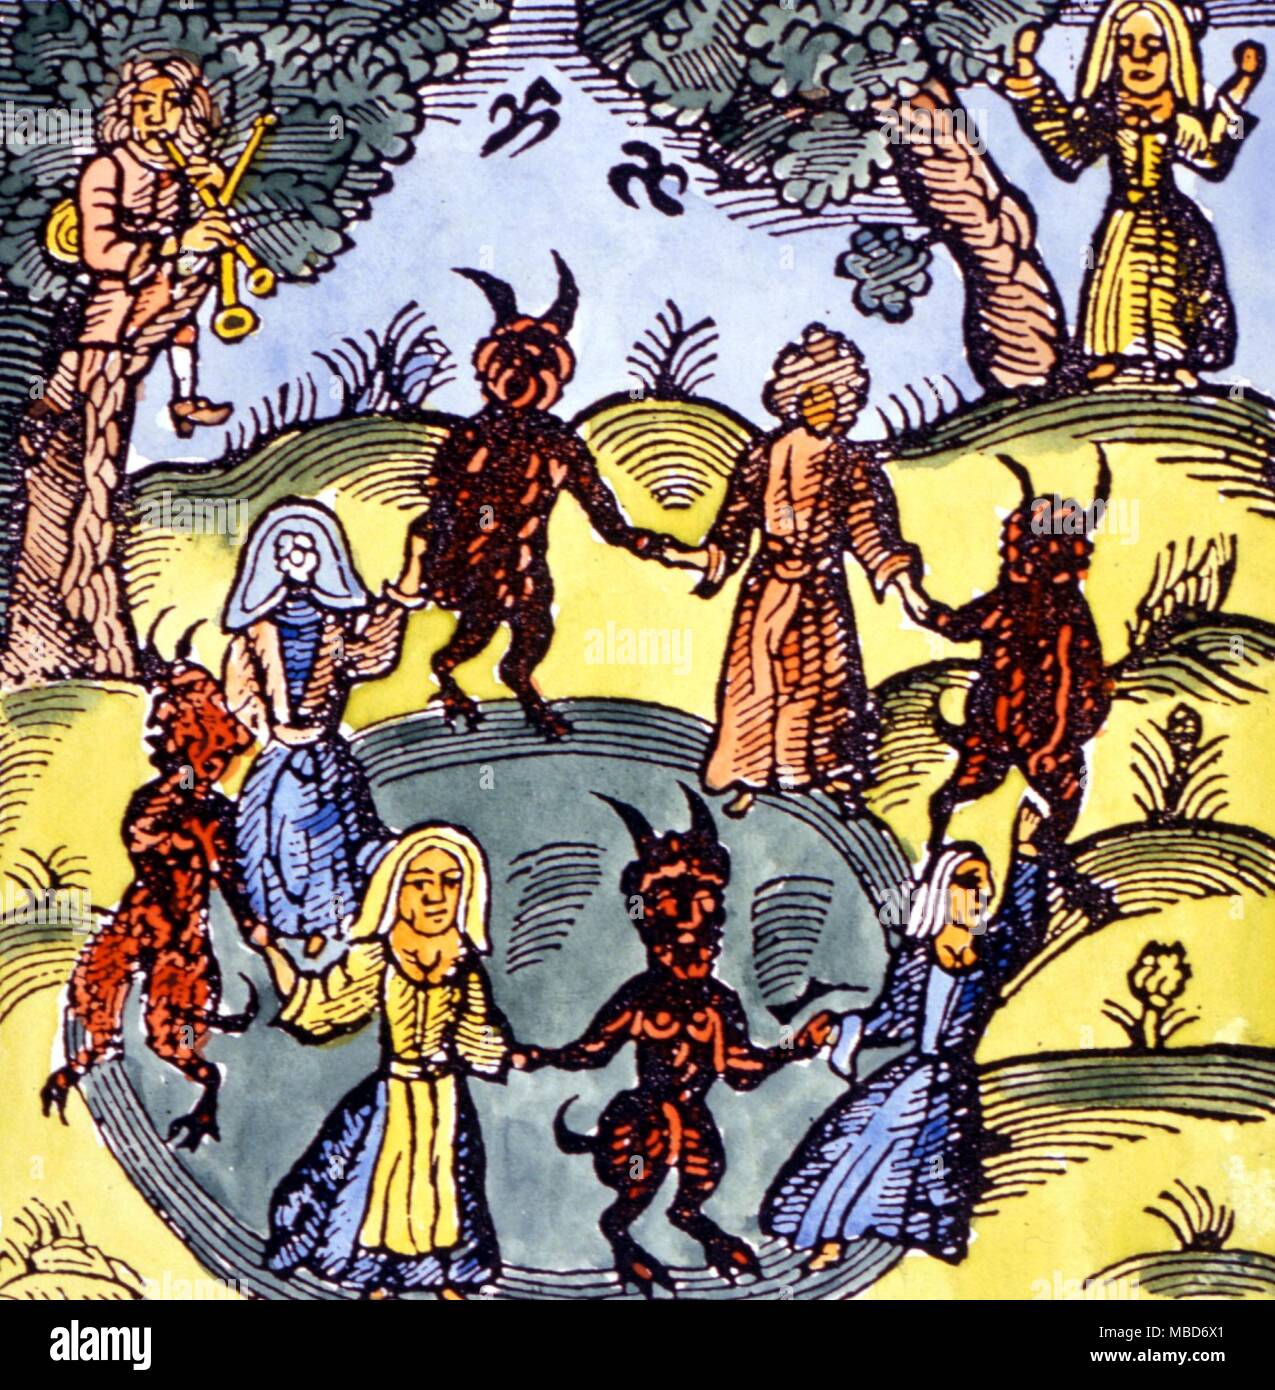 Sabbat um ein Magic Circle - Anfang des 17. Jahrhunderts Holzschnitt illustriert ein Sabbat mit Dämonen Hand in Hand mit Hexen tanzen um ein Magischer Kreis, der Klang des Dudelsacks und Song Stockfoto